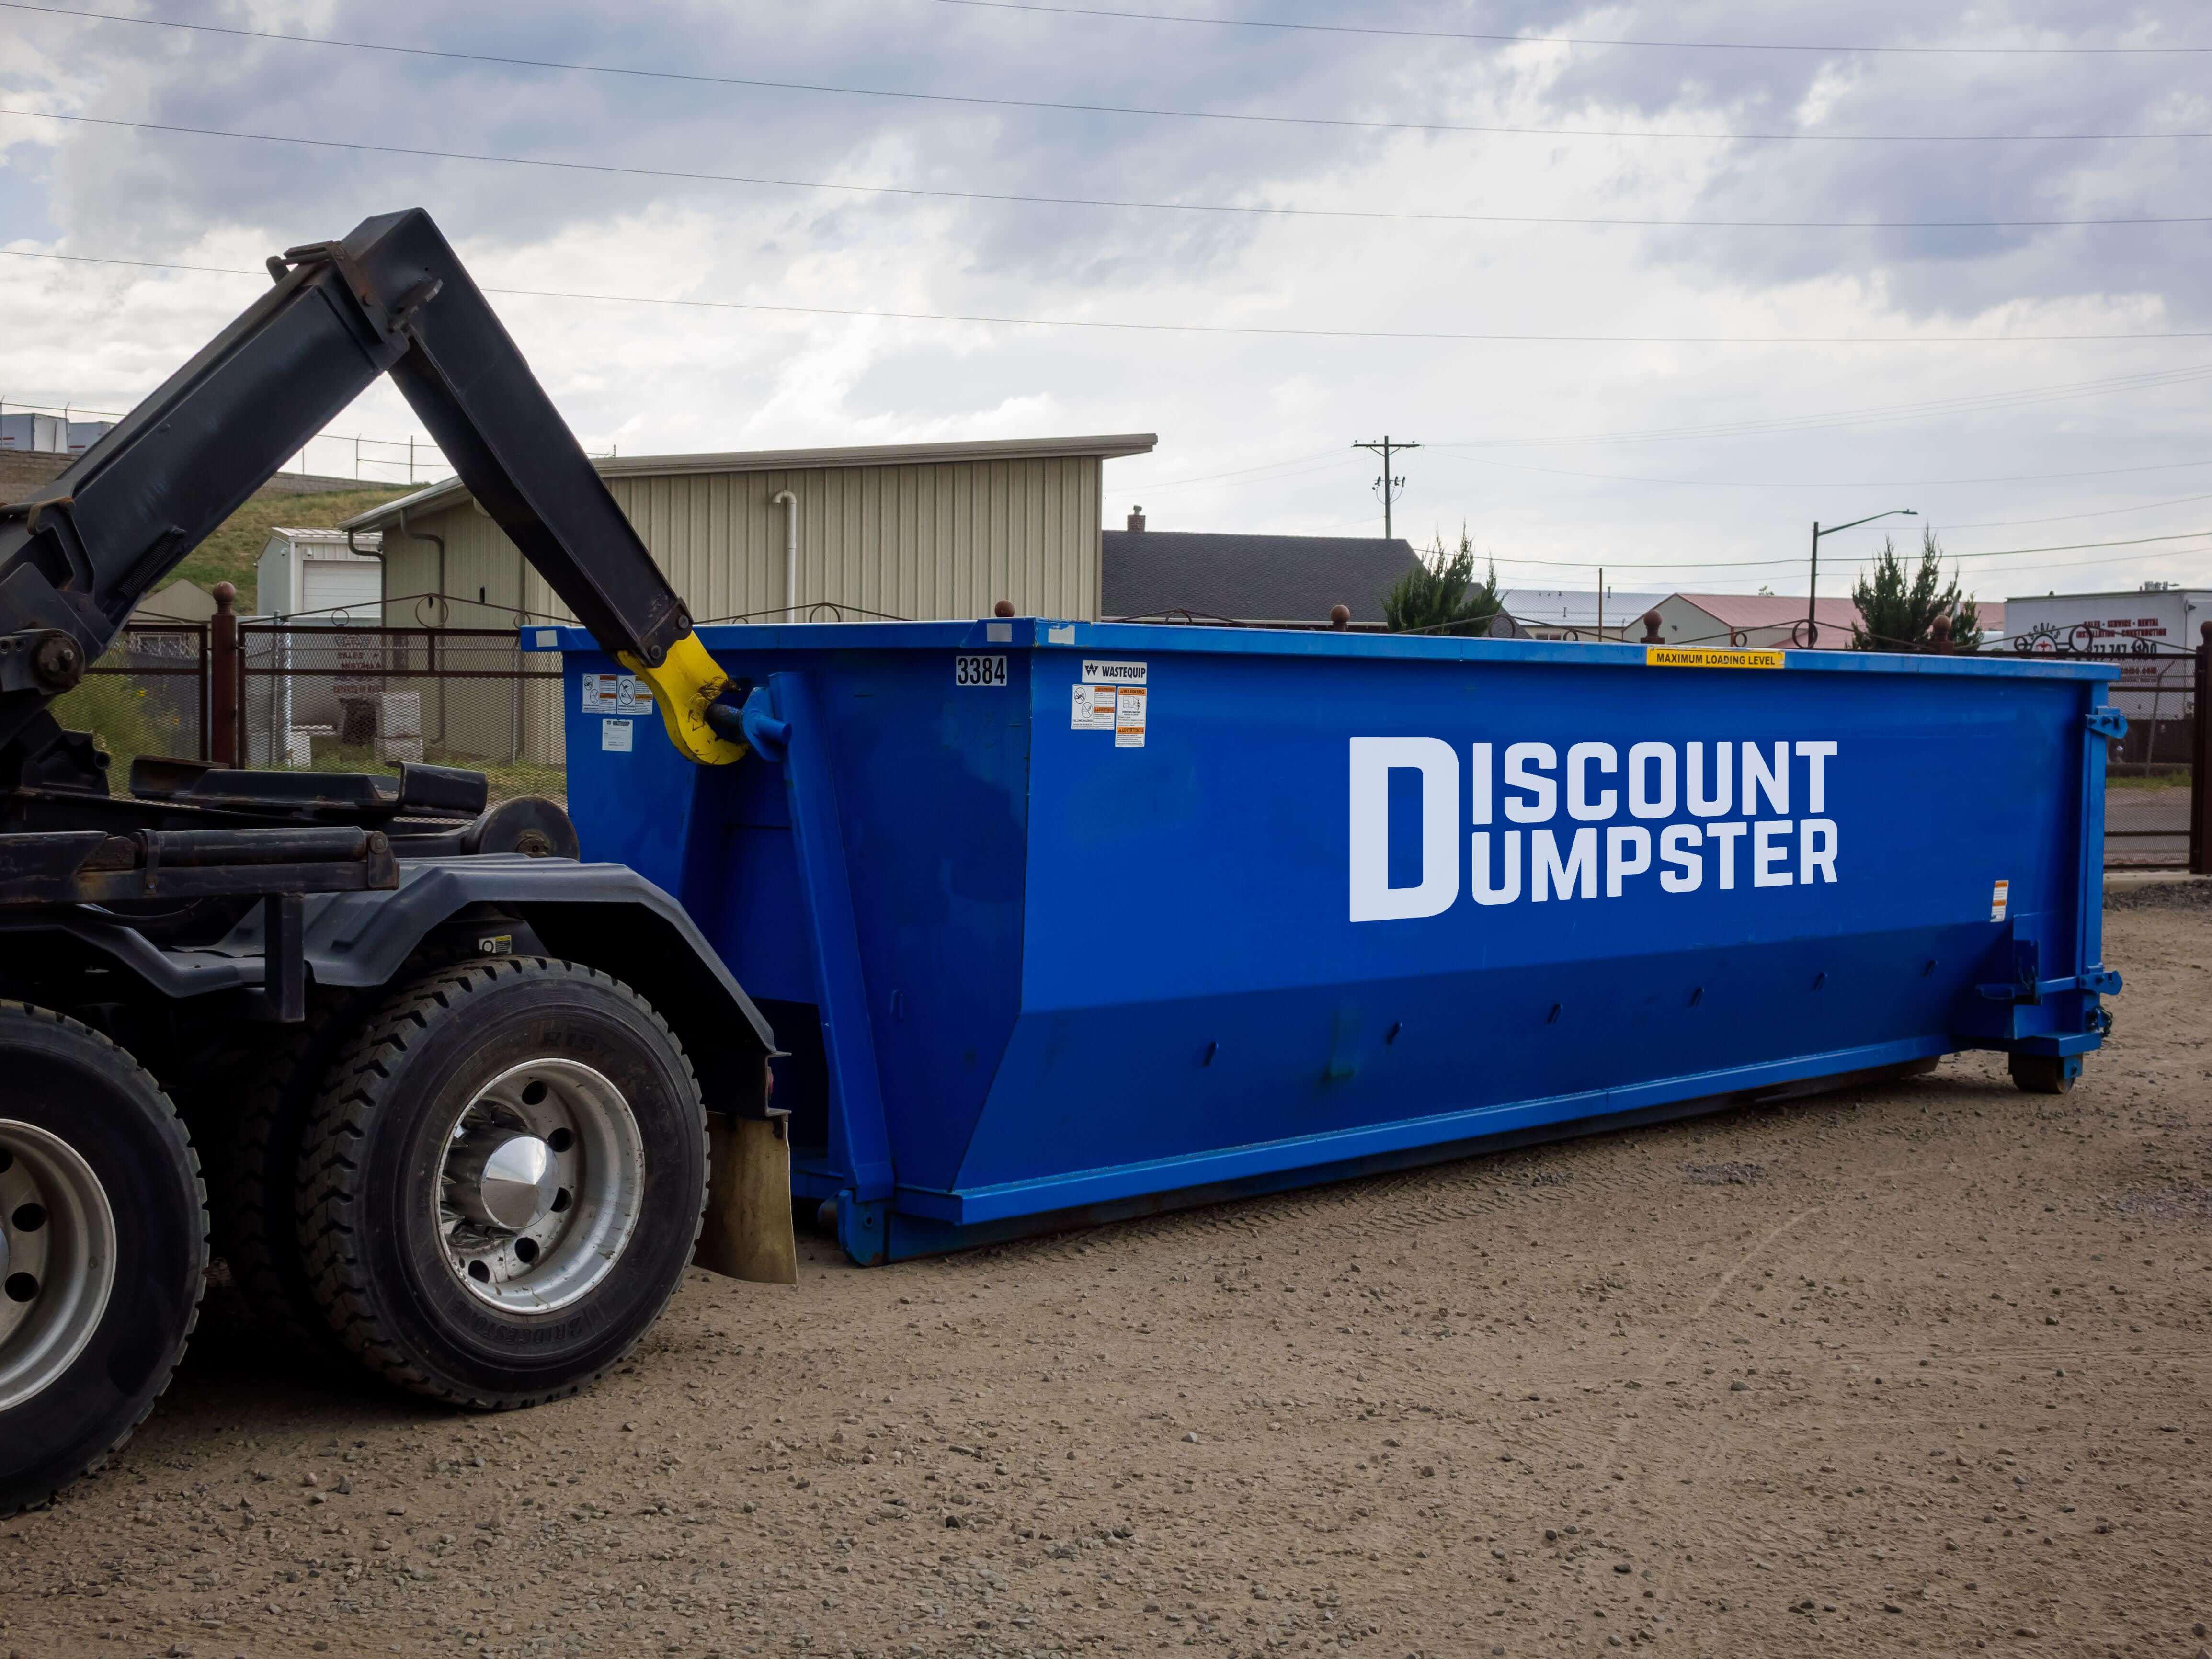 Discount dumpster has affordable dumpster rentals in Denver co